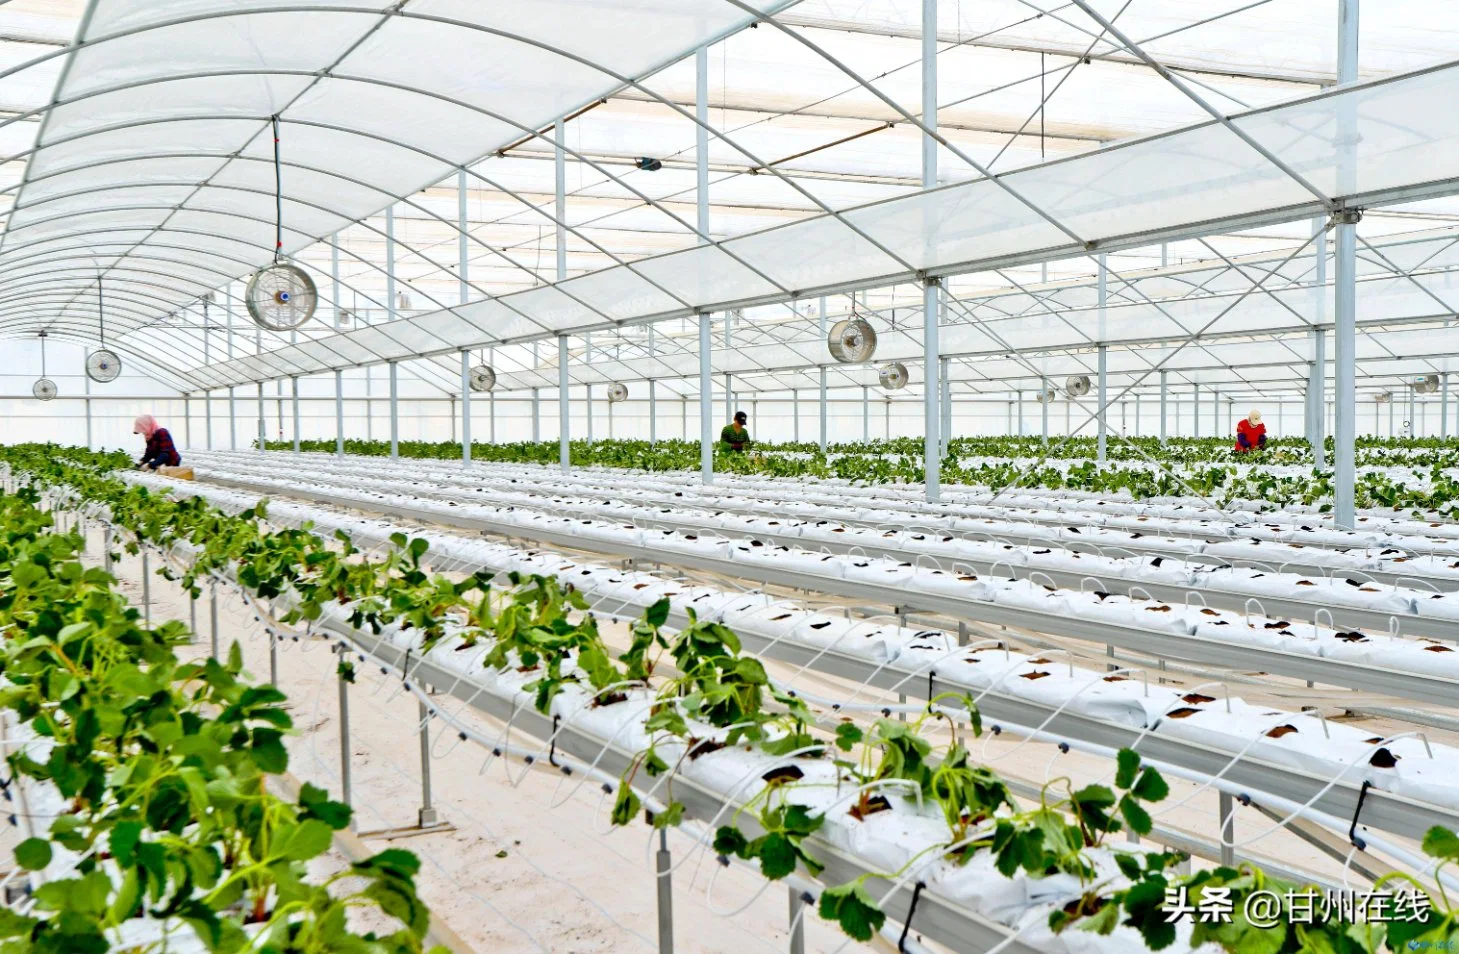 Los Invernaderos inteligente con sistema de siembra el cultivo hidropónico para plantar